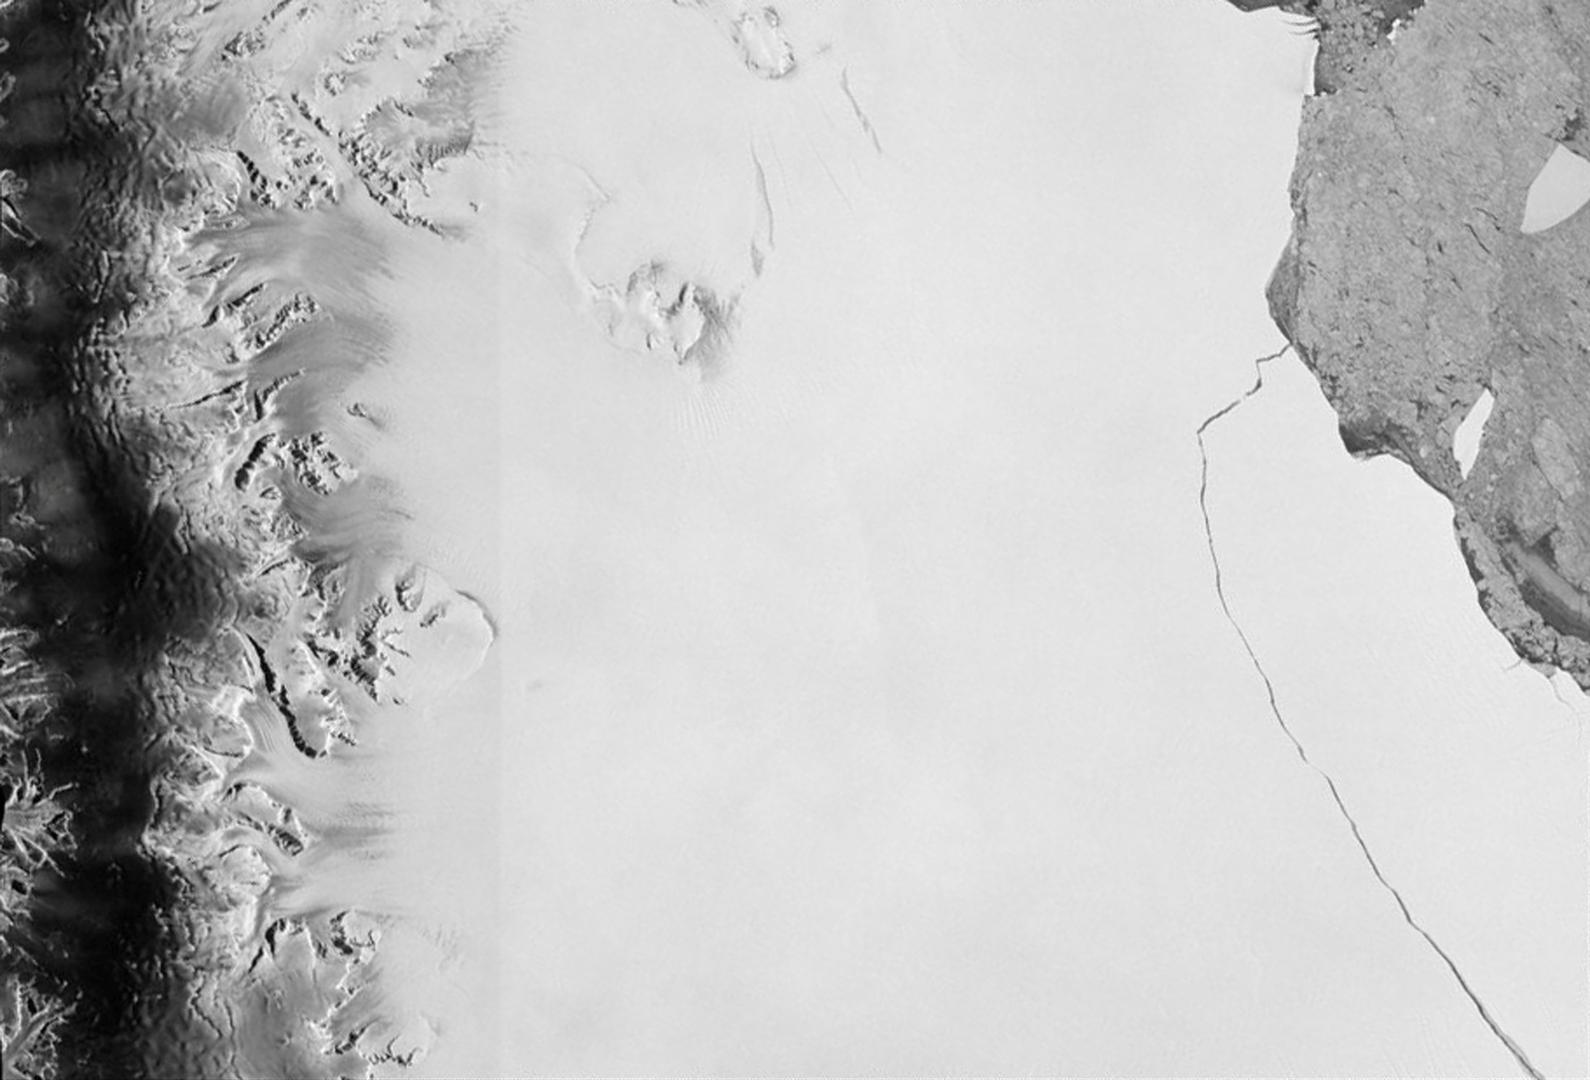 Ledena santa površine 5800 četvornih kilometara odvojila se od ledenog grebena Larsen C na Antarktici i slobodno pluta prema sjeveru, objavili su u srijedu njemački stručnjaci. Dugačka 175 i široka 50 kilometara, radi se o jednoj od najvećih santi koju su znanstvenici registrirali posljednjih godina i trebat će dvije do tri godine da se posve istopi, priopćio je institut Alfred Wegener u Bremenu.